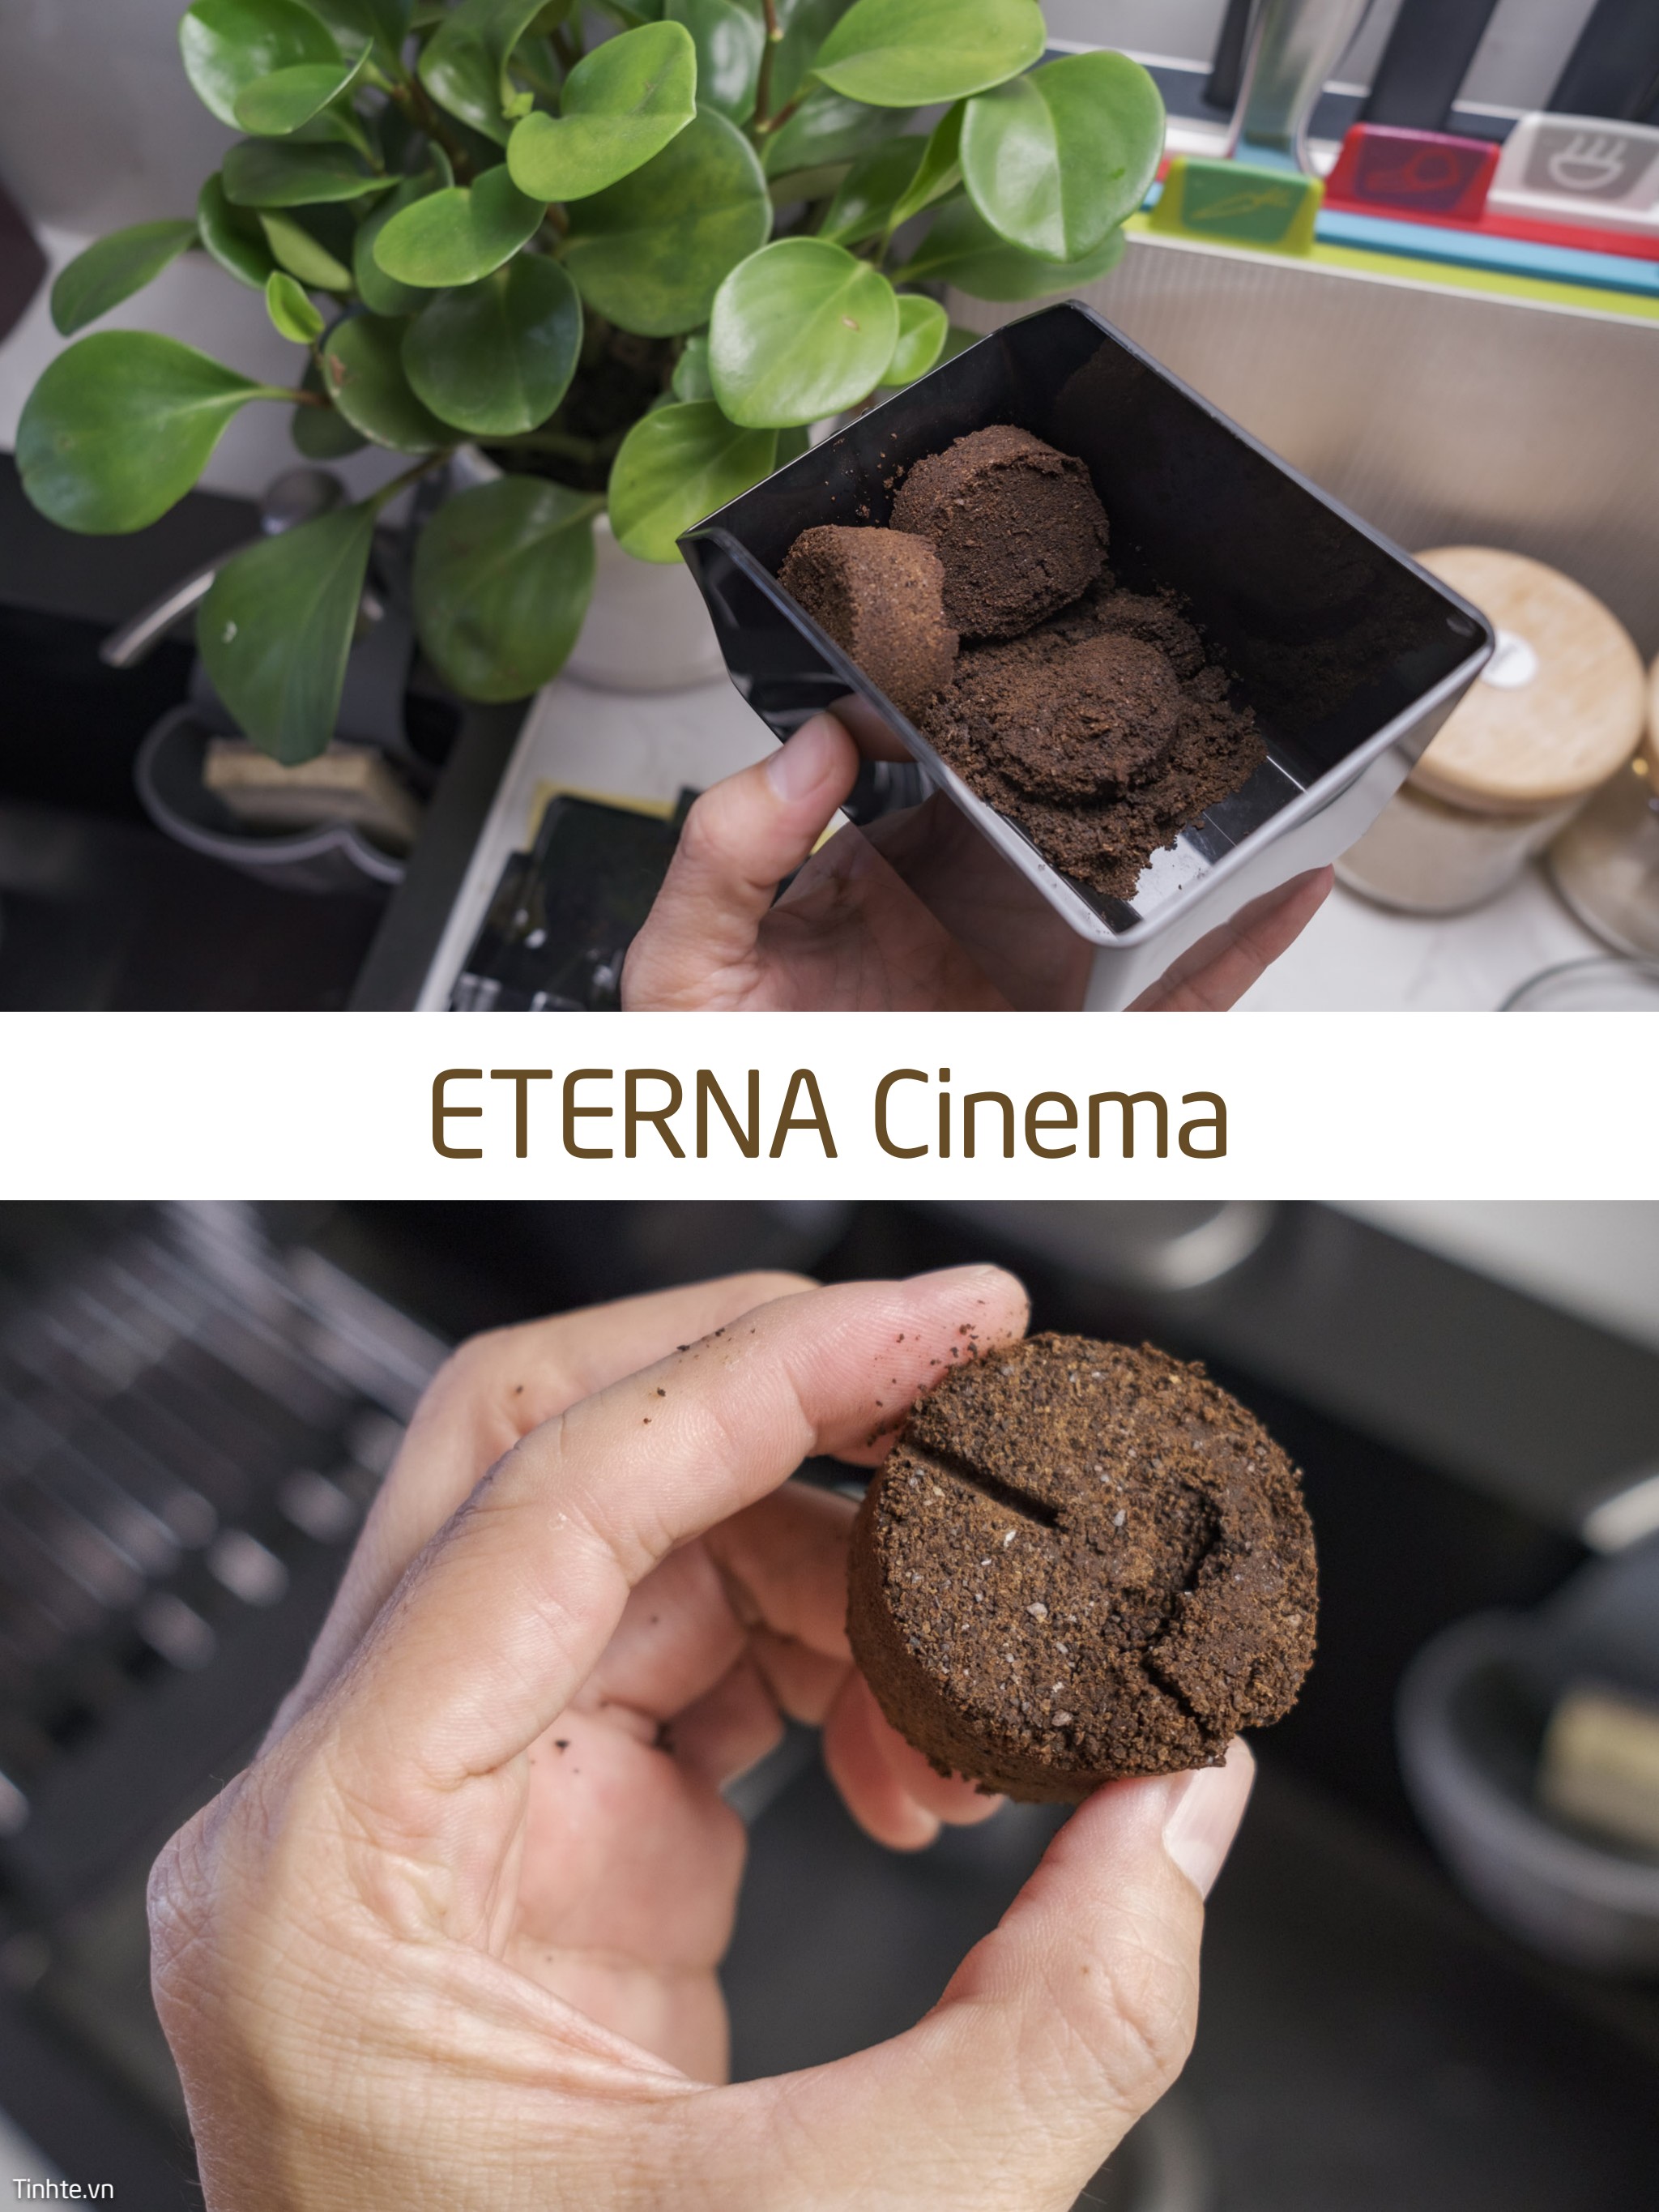 Eterna_Cinema.jpg